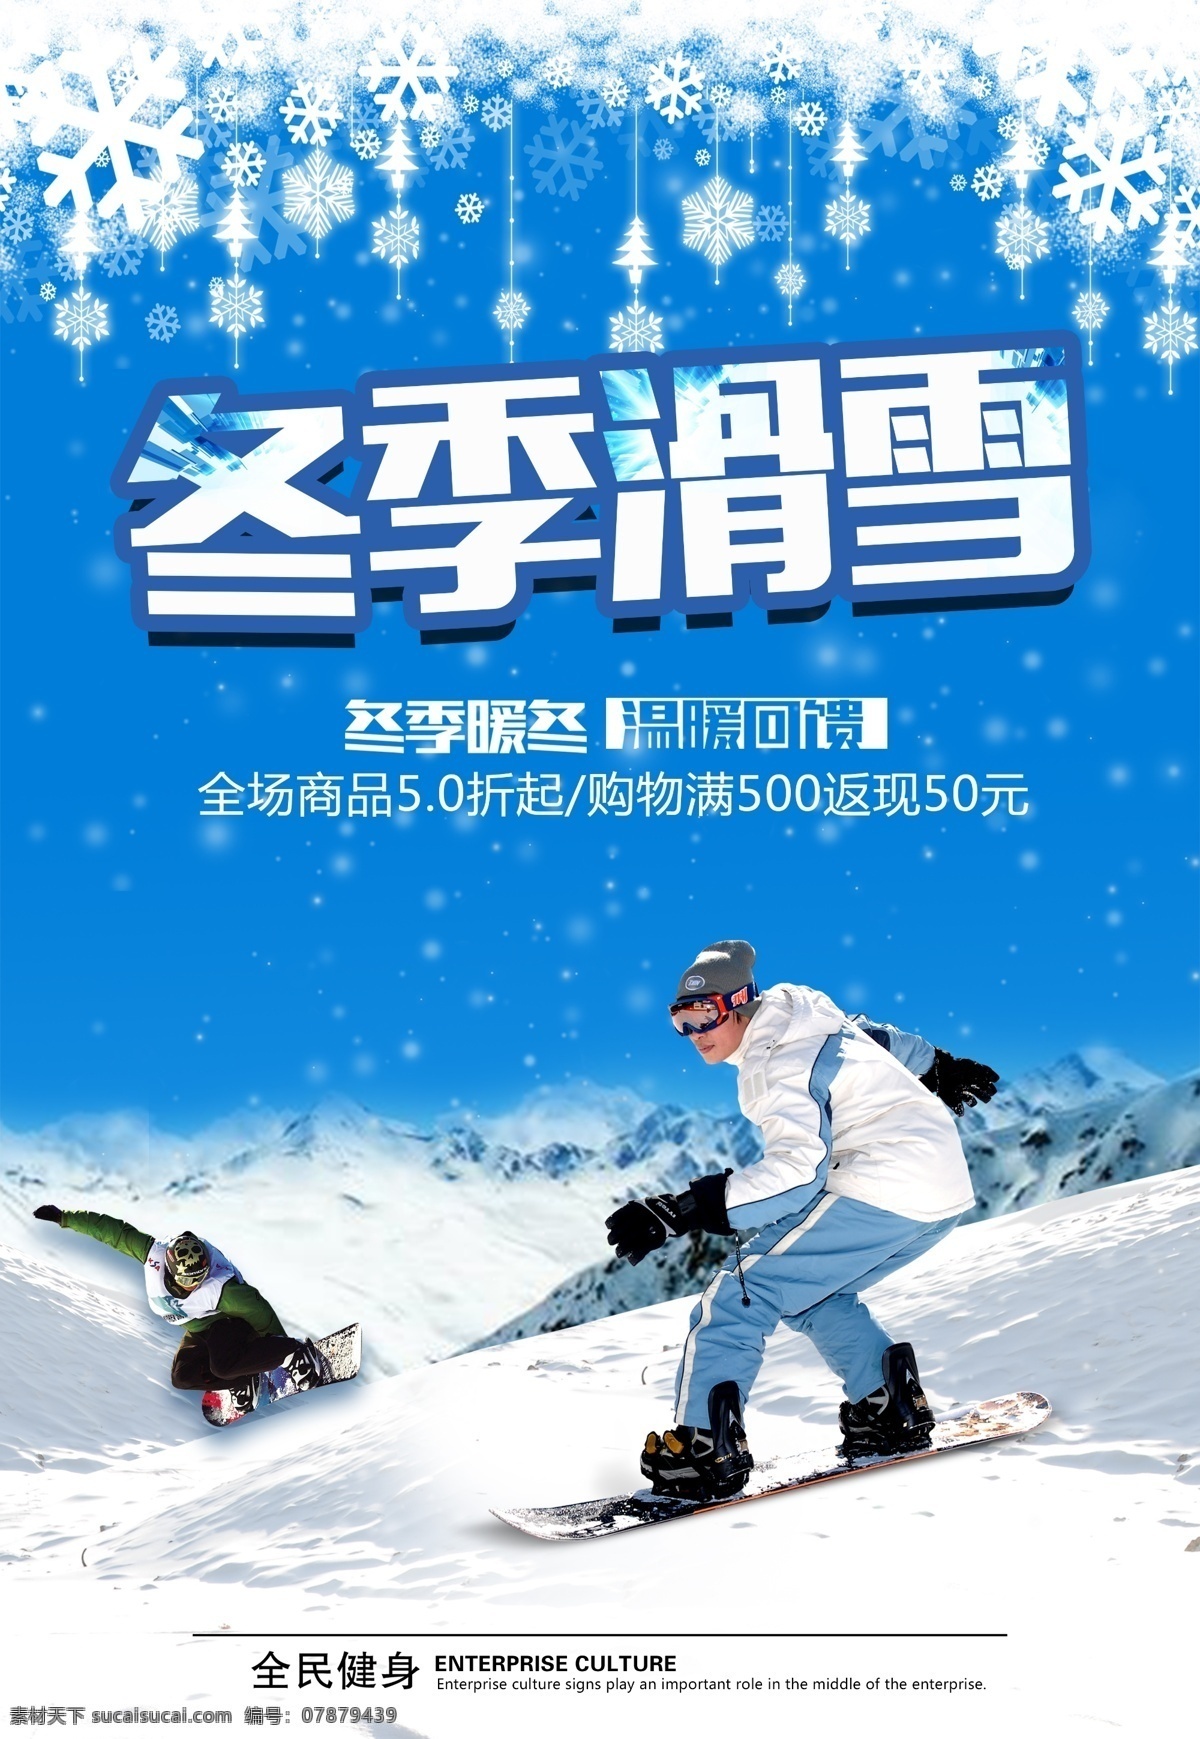 滑雪海报图片 冬季 滑雪 冬季滑雪 旅游海报 旅游广告